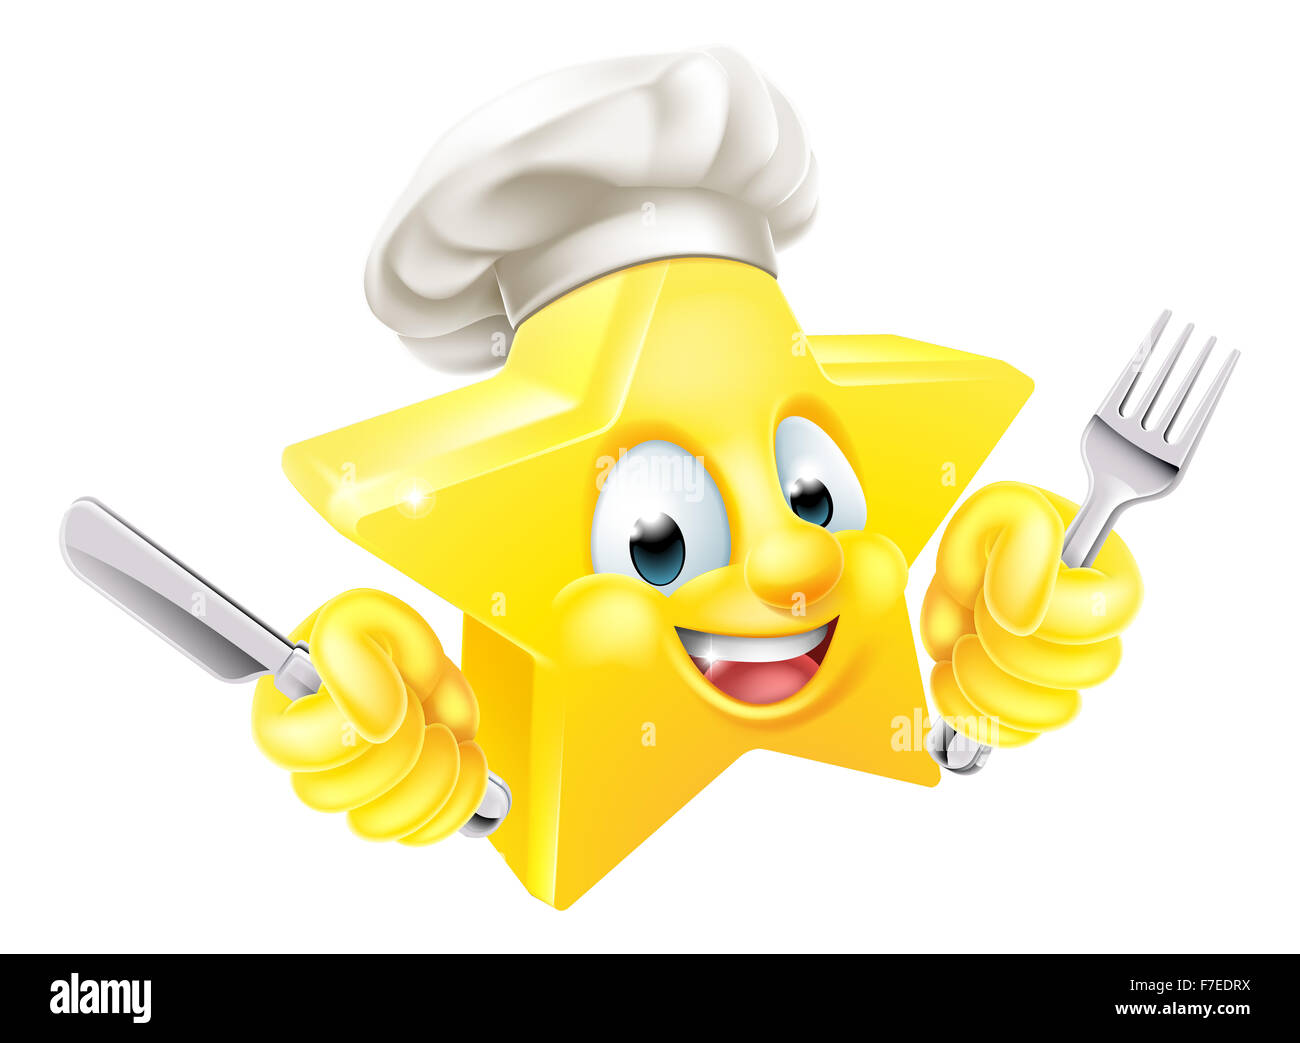 Le chef étoilé Cartoon mascot emoticon emoji caractère dans un chef hat  tenant un couteau et fourchette Photo Stock - Alamy